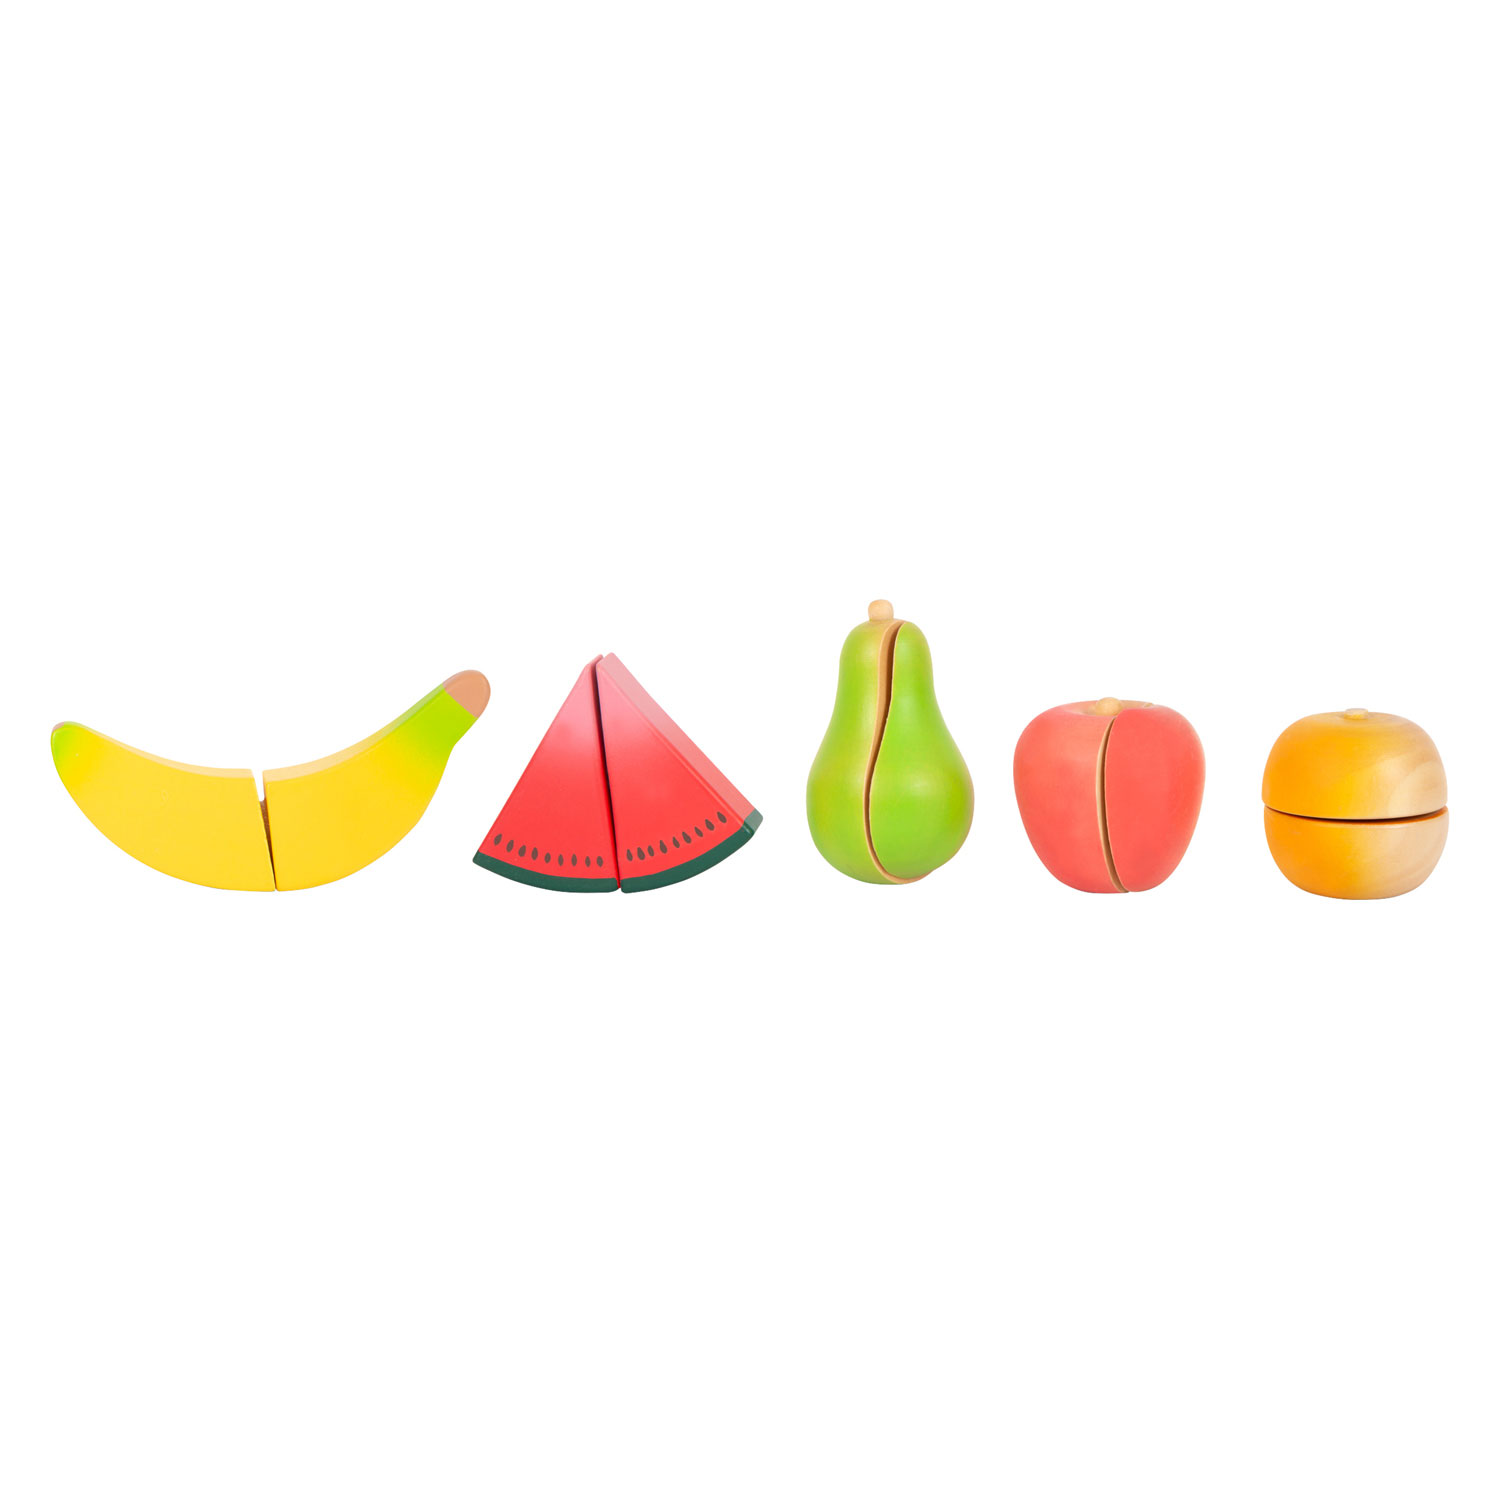 Small Foot - Ensemble de fruits à découper et à jouer en bois, 13dlg.